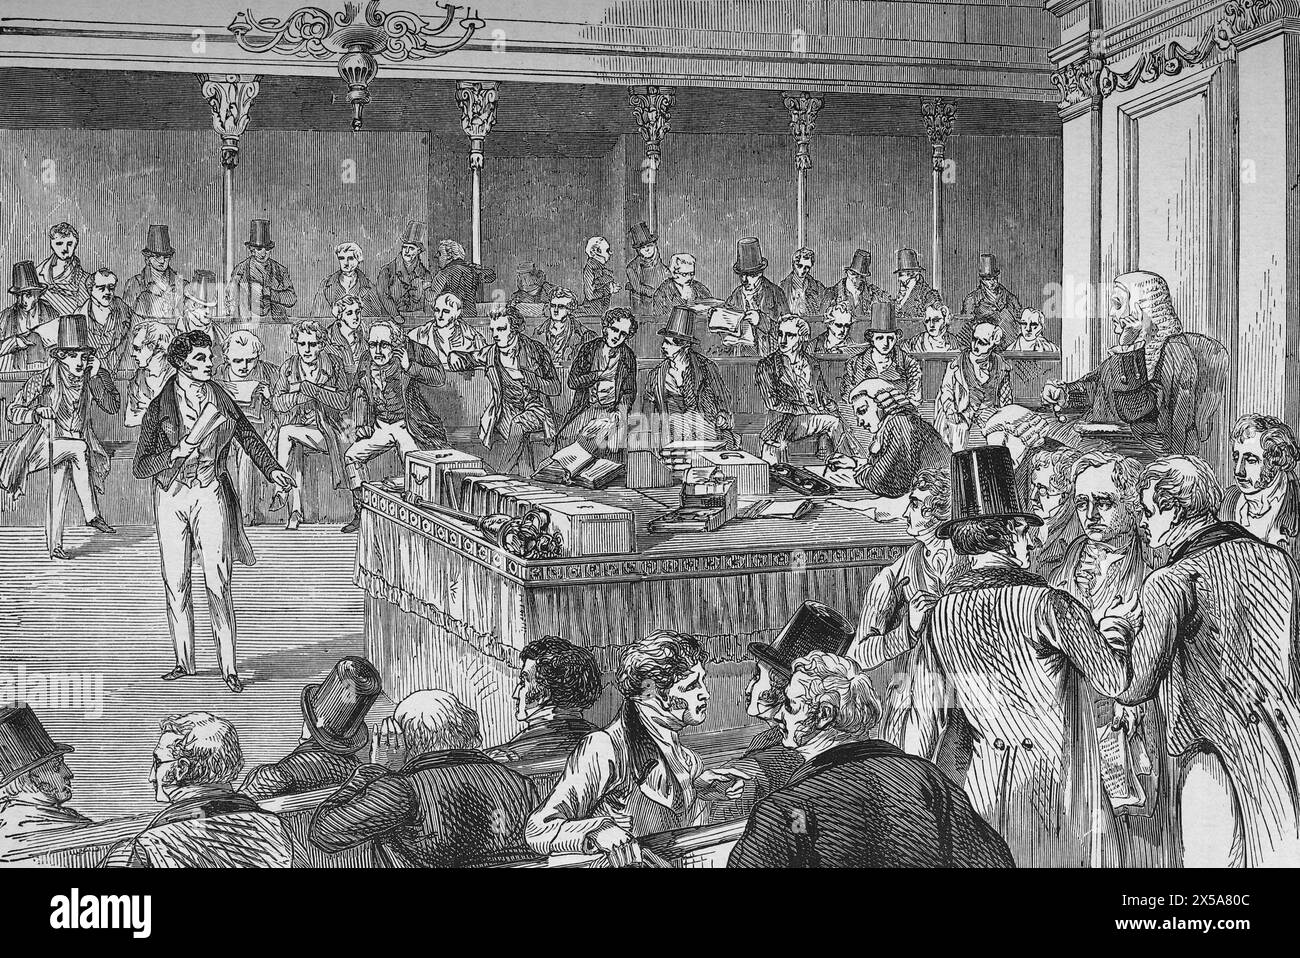 Lord John Russell introduce il Representation of the People Act 1832. Illustrazione tratta dalla storia dell'Inghilterra di Cassell, vol VII. New Edition pubblicato Circ 1873-5. Foto Stock